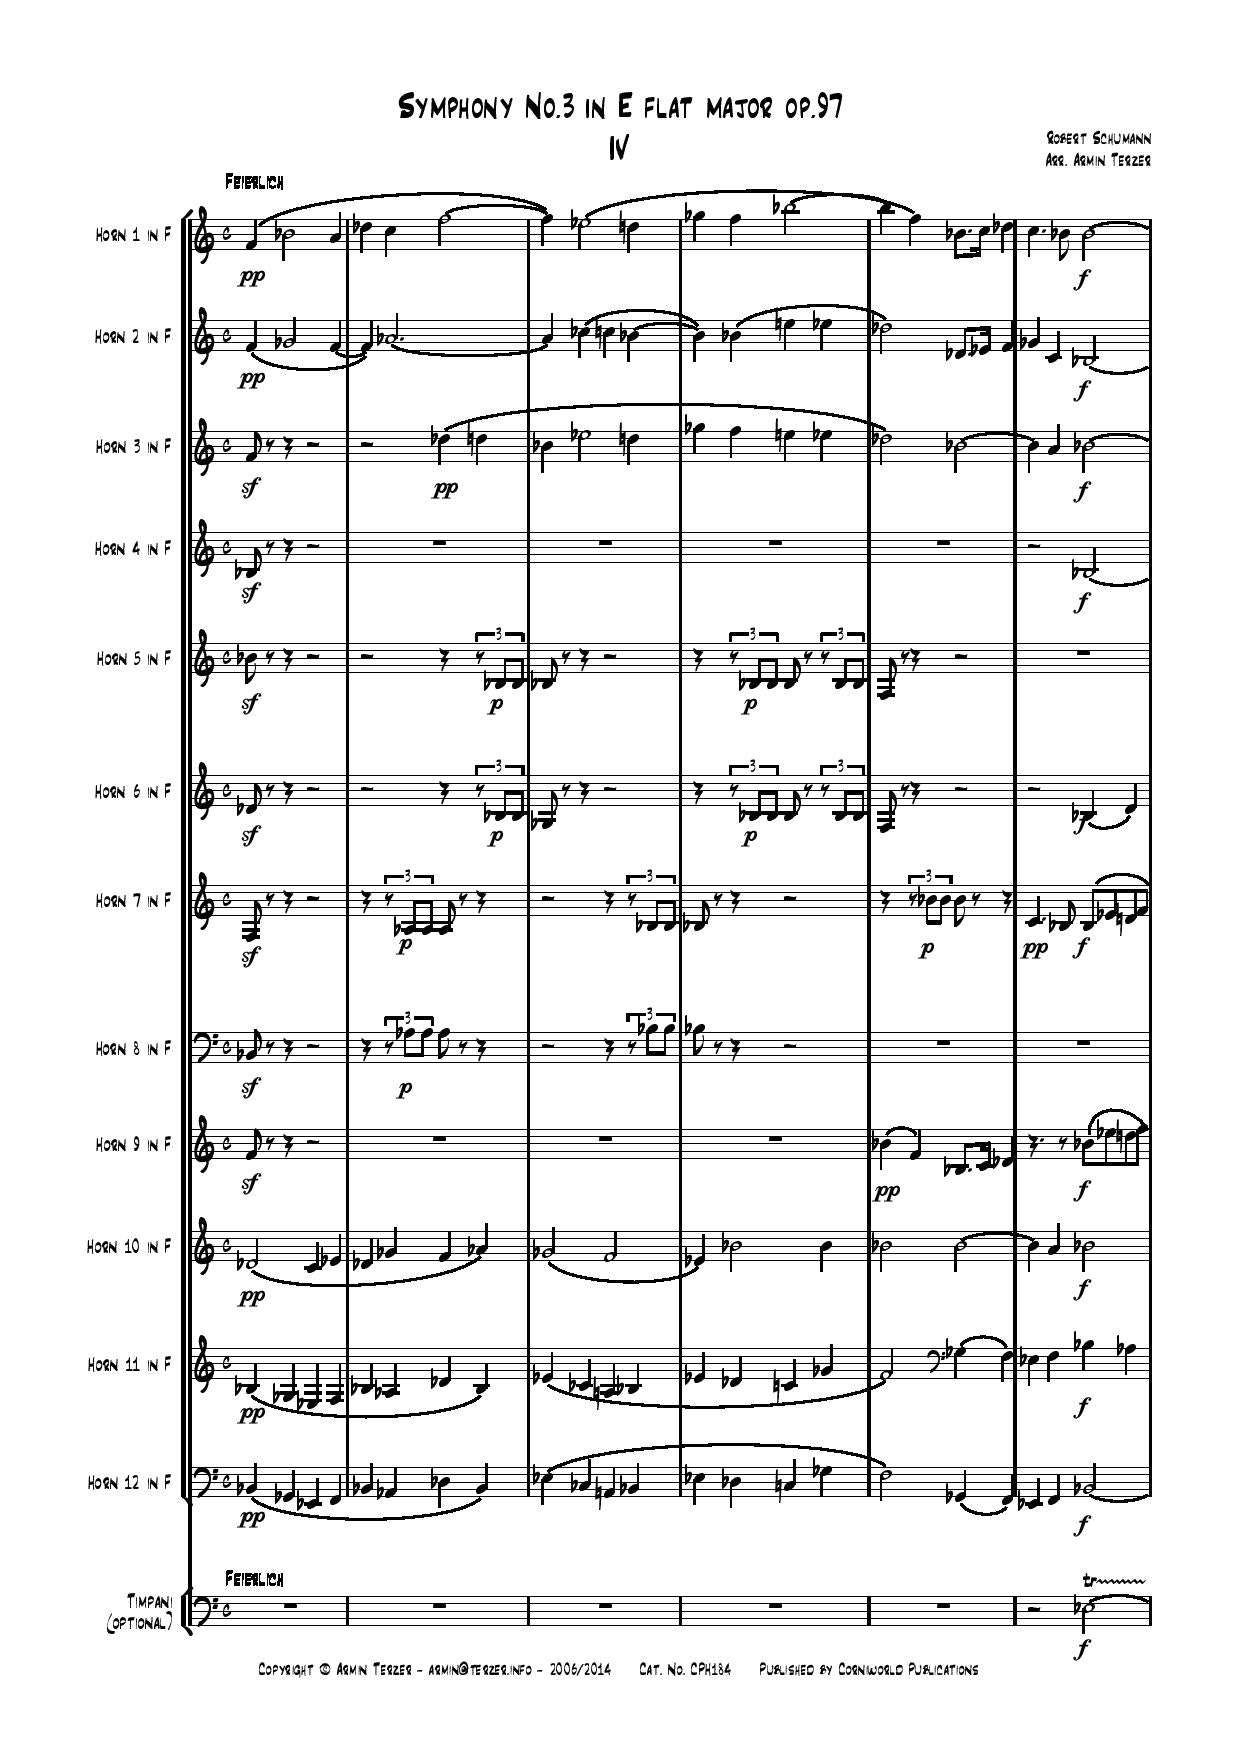 4th Mvt from Symphony No.3 - Schumann CPH184